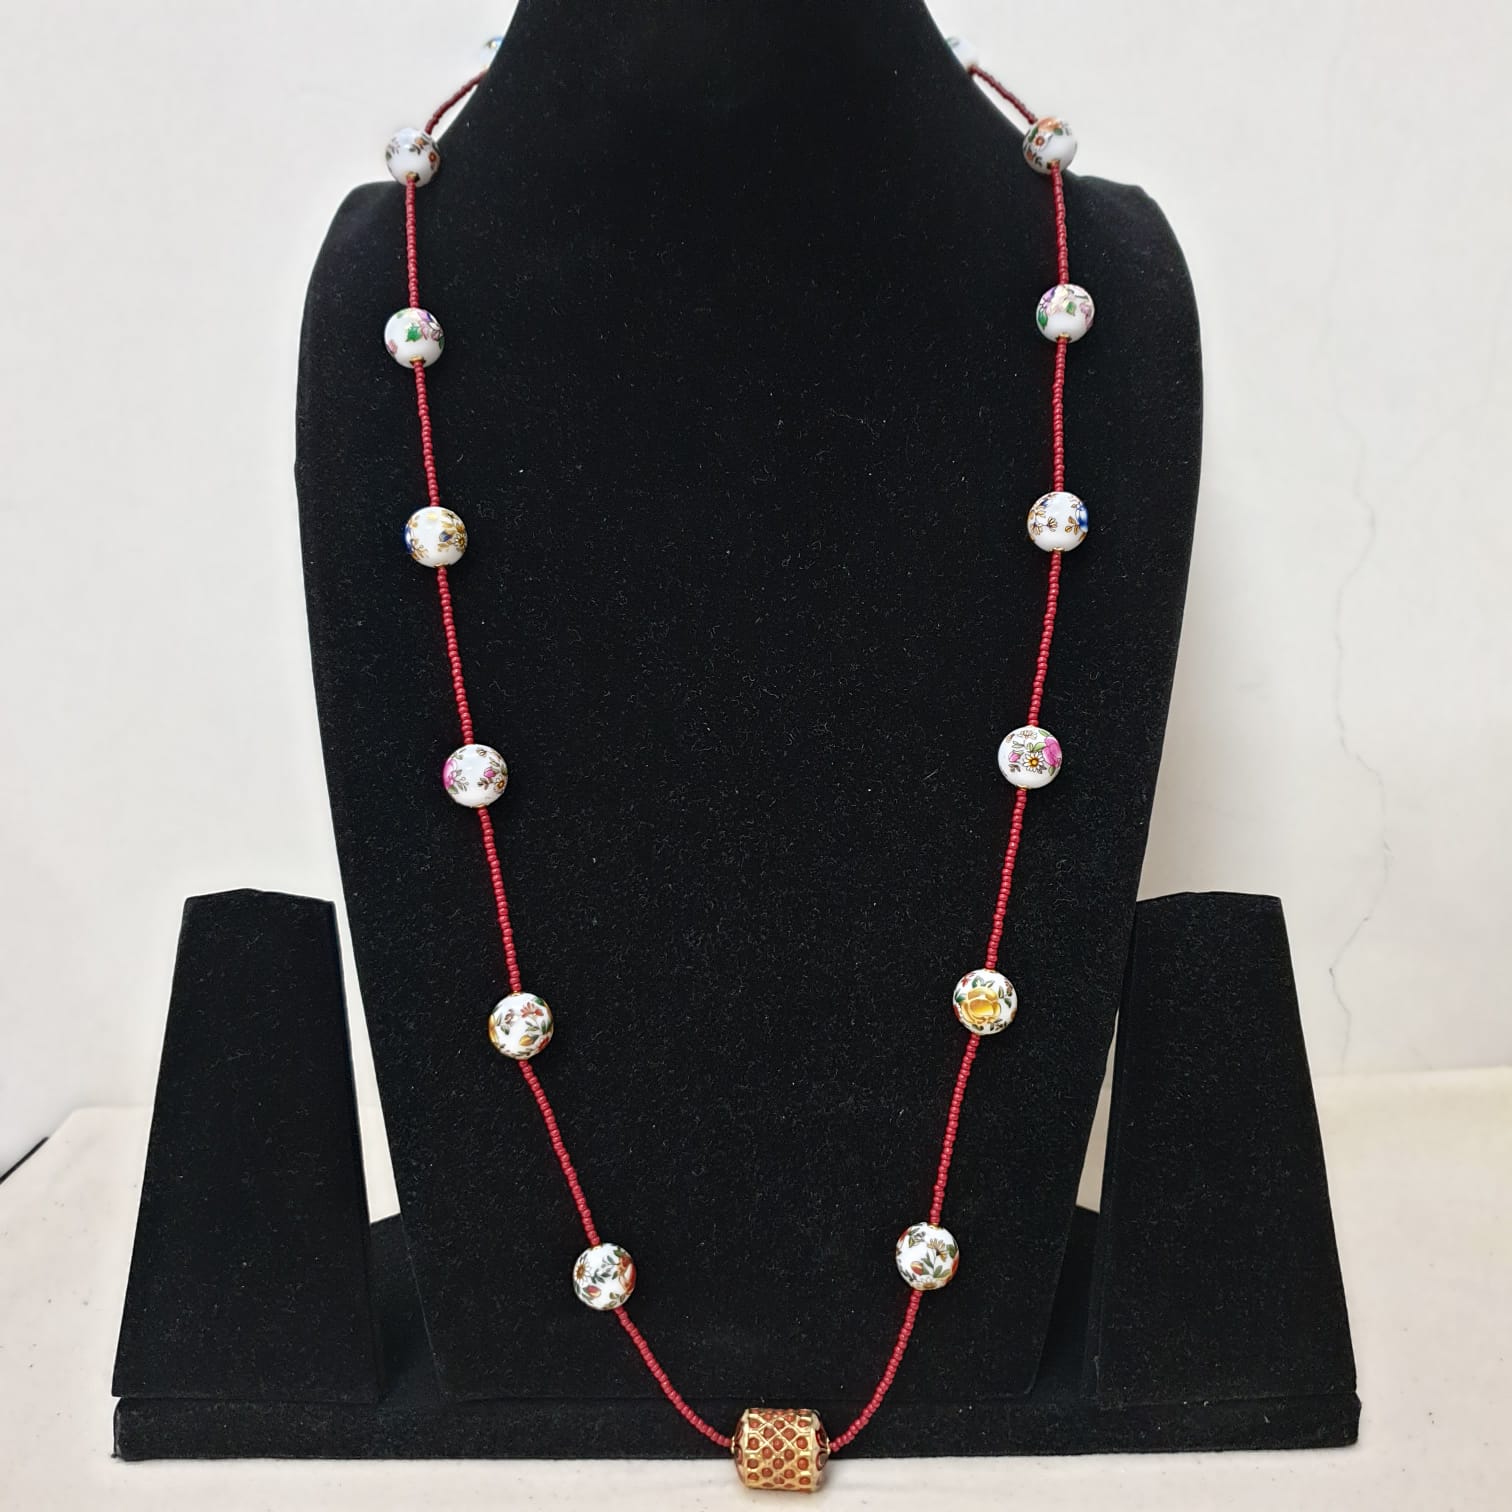 Jadau and Handpainted Bead Necklace